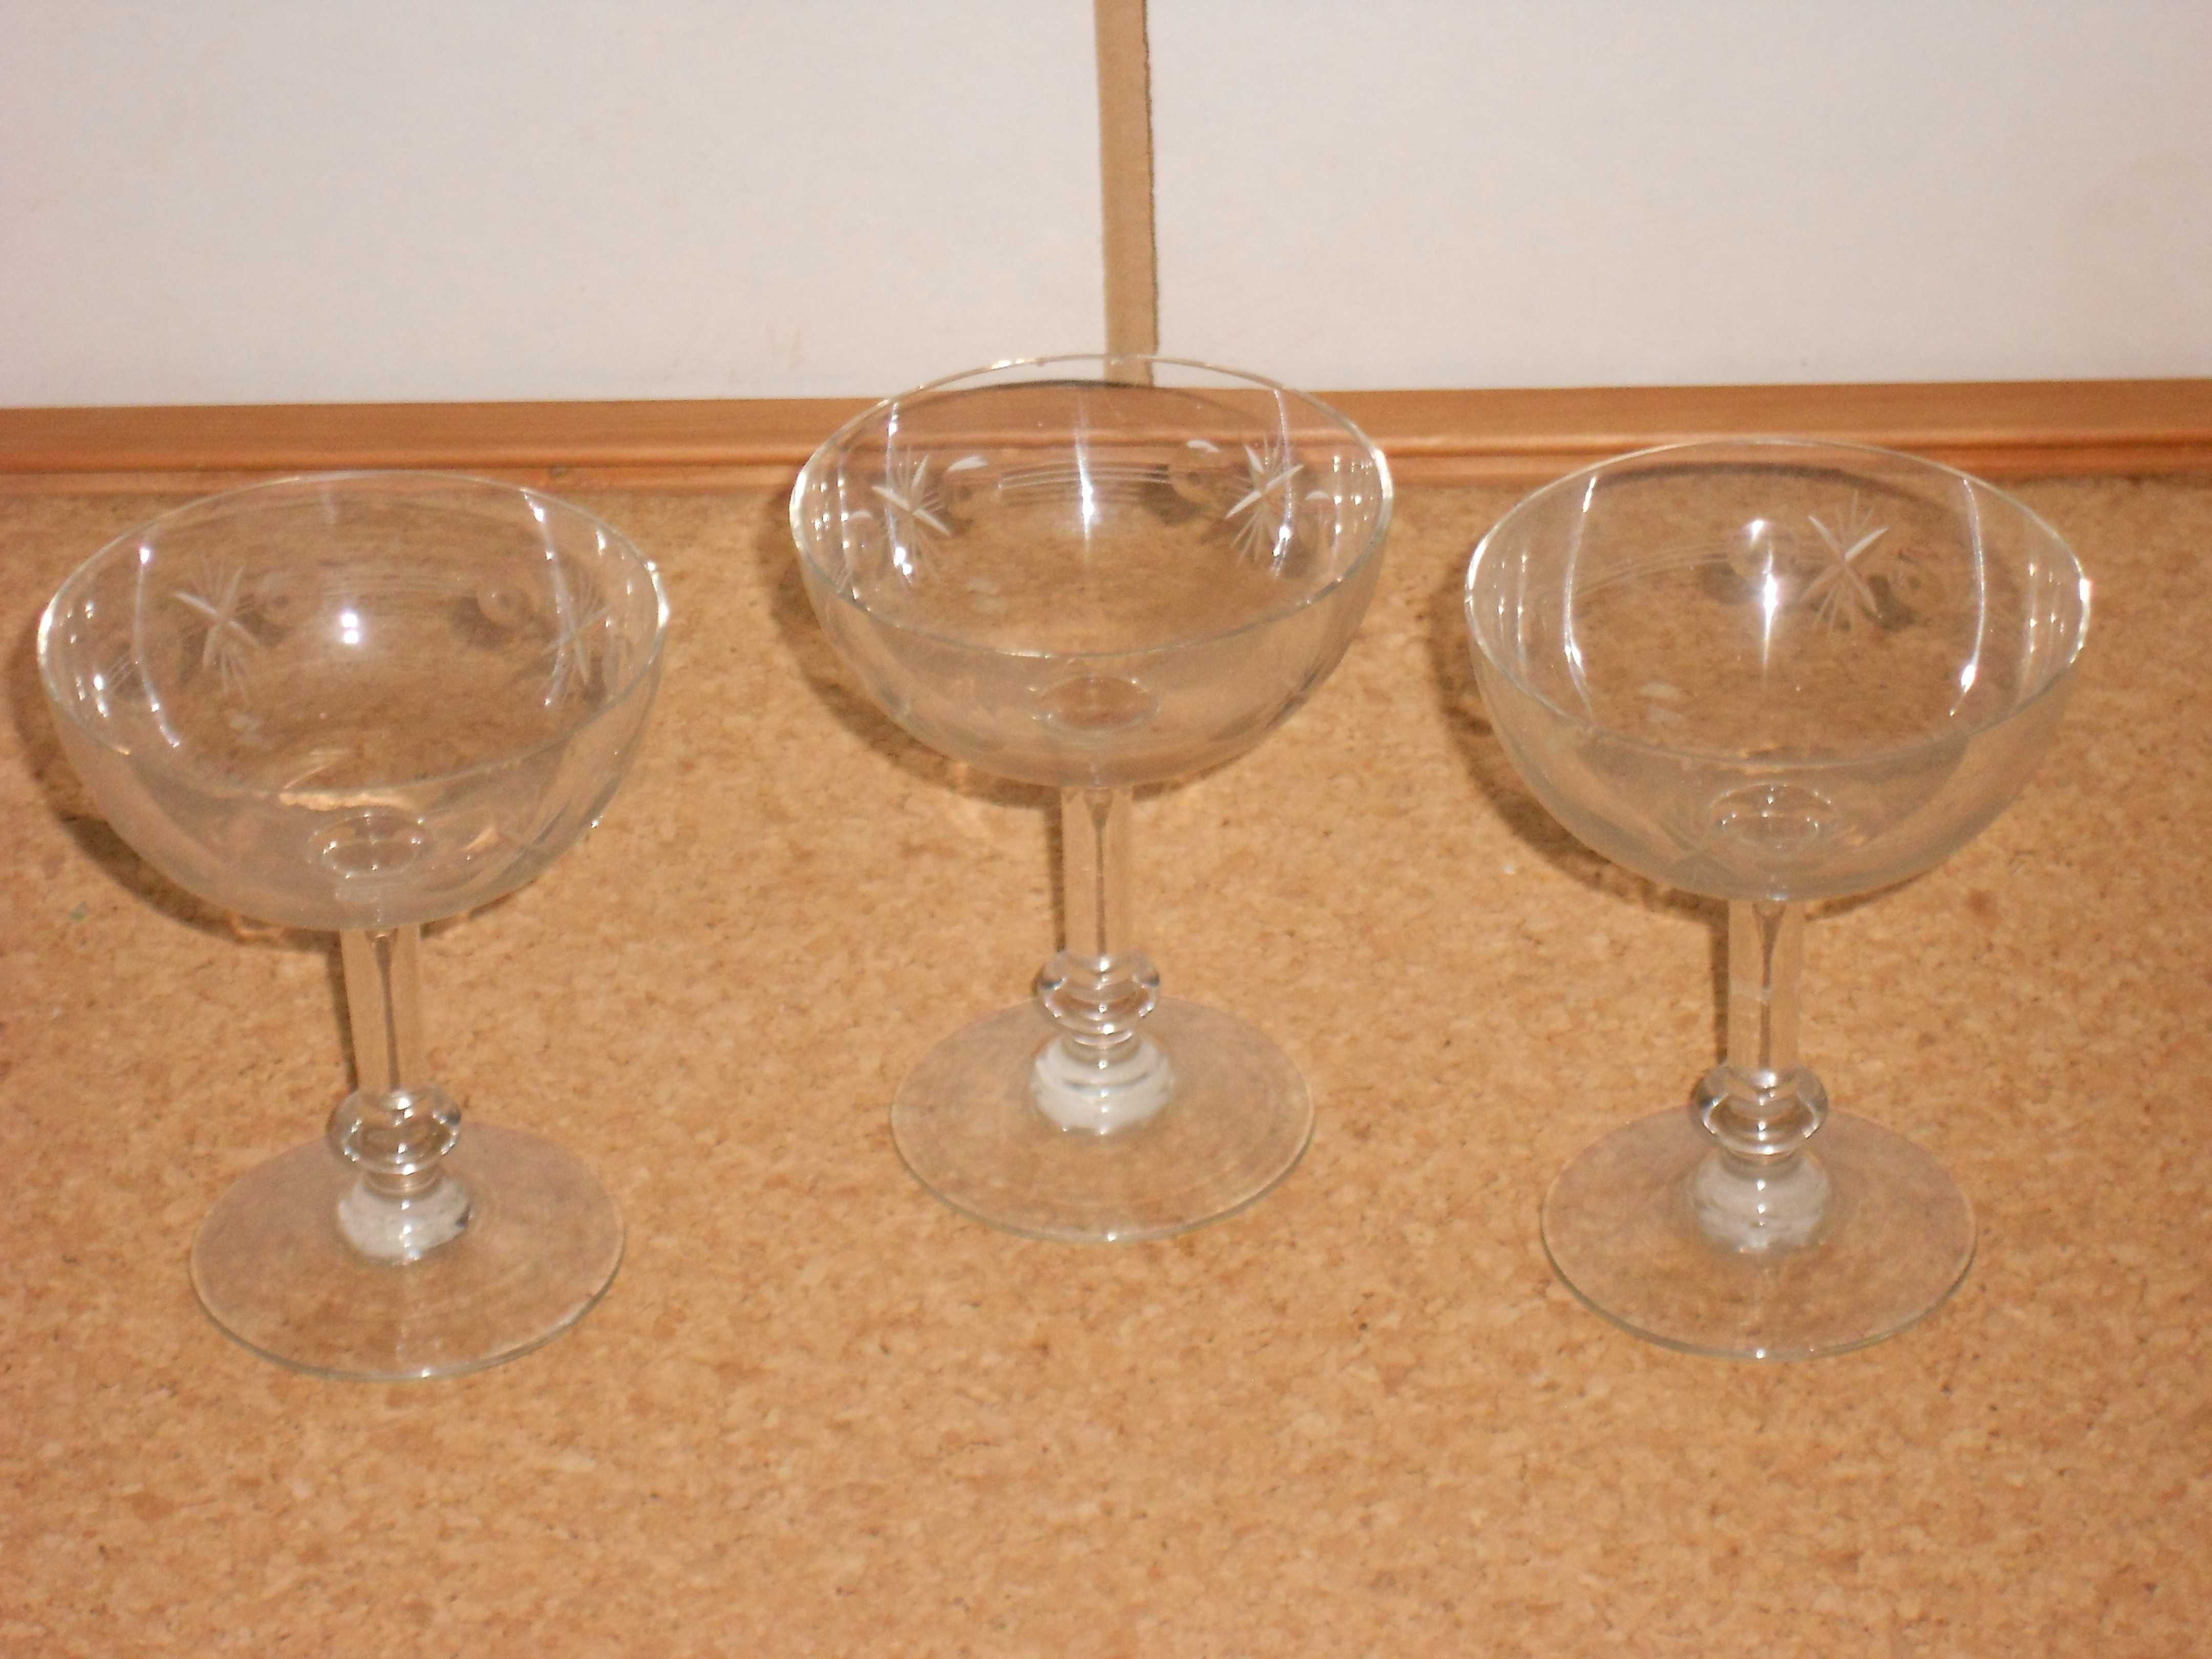 Coleccao copos antigos vintage diversos vidro